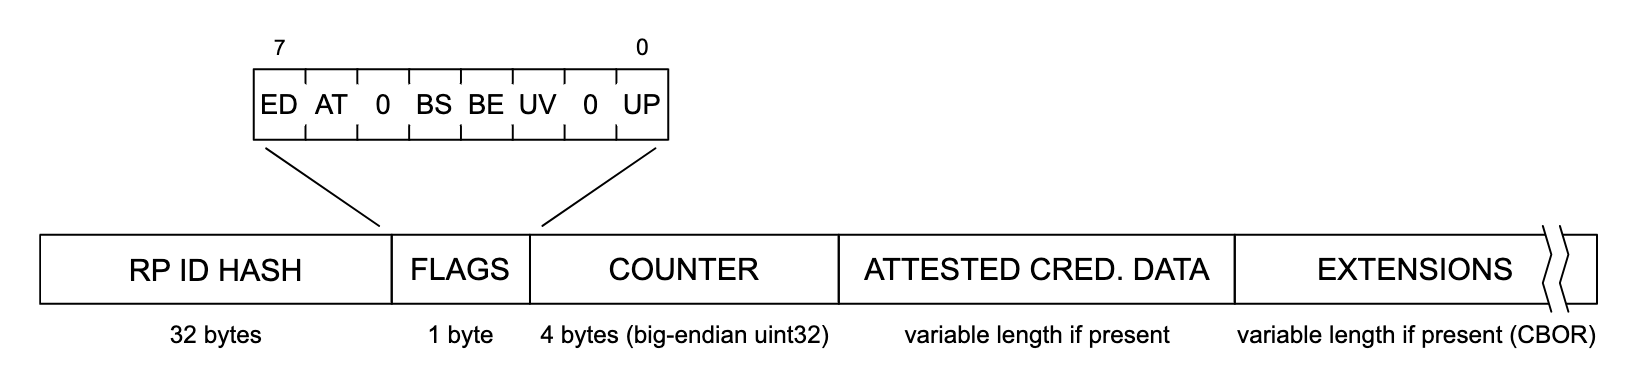 身份验证数据结构的描绘。该数据结构的每一部分从左到右依次为“RP ID HASH”（32 个字节）、“FLAGS”（1 字节）、“COUNTER”（4 个字节，big-endian uint32）、“ATTESTE CRED”。DATA”（如果存在可变长度）和“EXTENSIONS”（如果存在可变长度 (CBOR)）。“FLAGS”部分已展开，显示可能的标志列表，从左到右依次为：“ED”、“AT”、“0”、“BS”、“BE”、“UV”、“0”和“UP”。